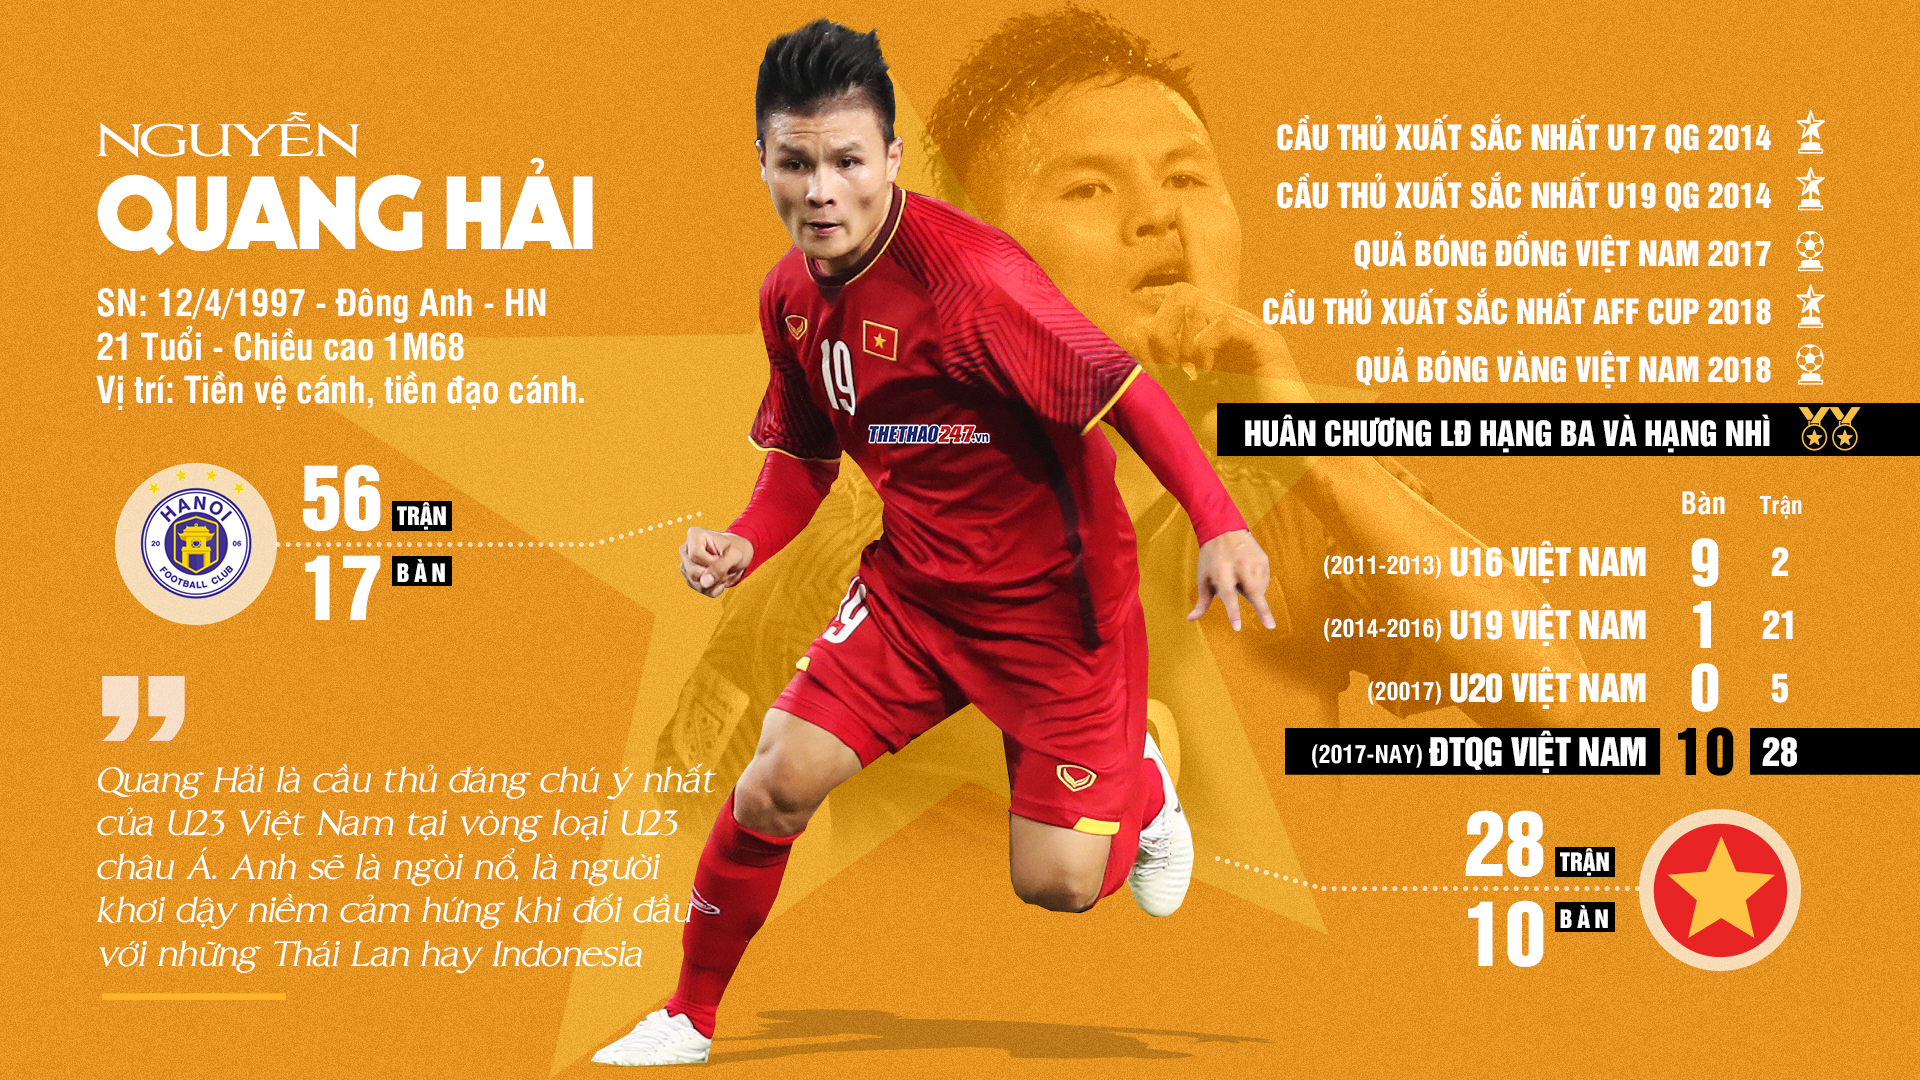 Hình ảnh thông tin cầu thủ Quang Hải